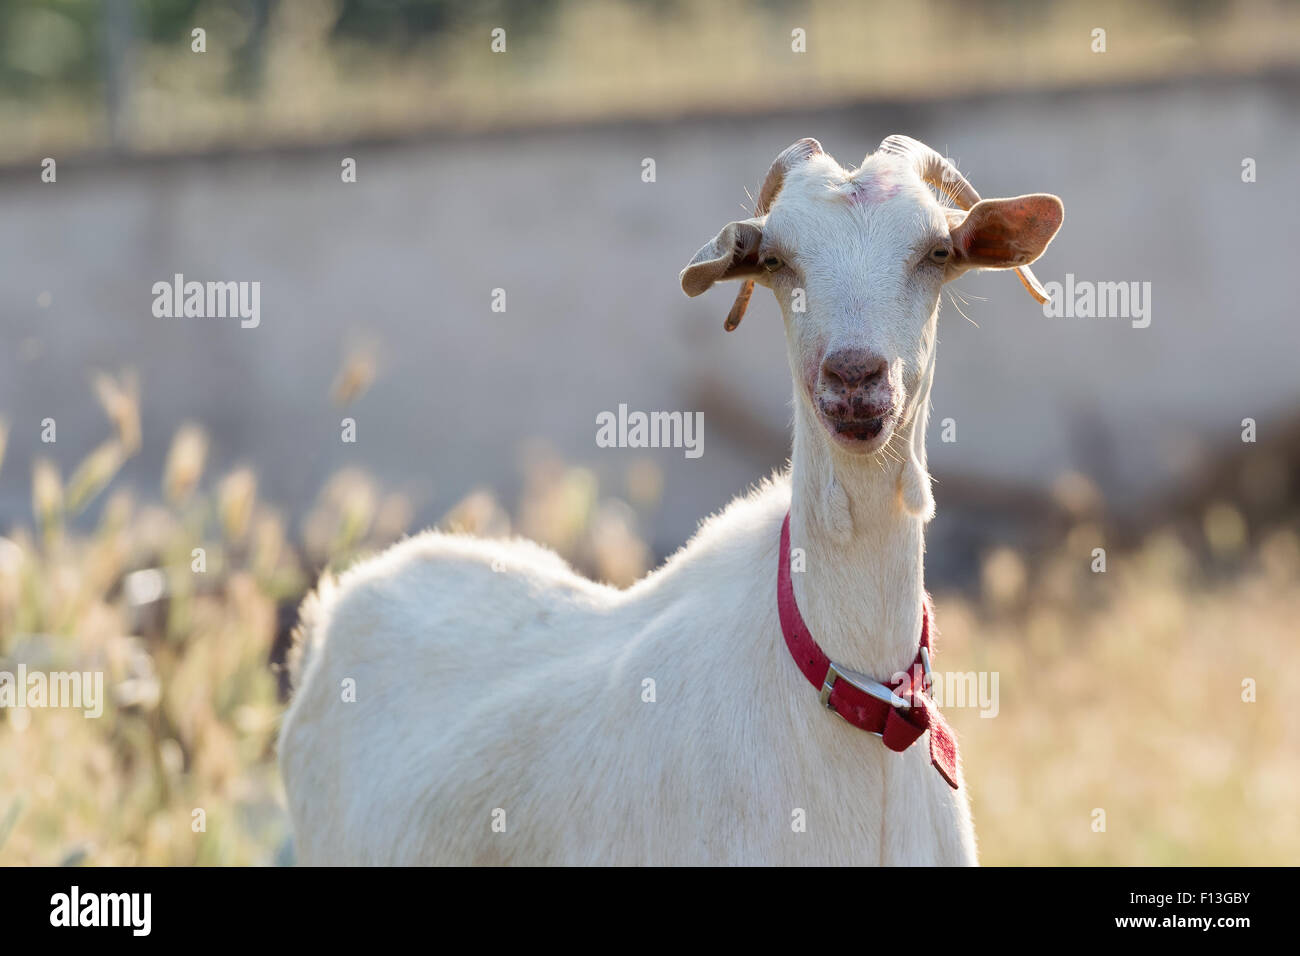 Cute goat portrait. Stock Photo